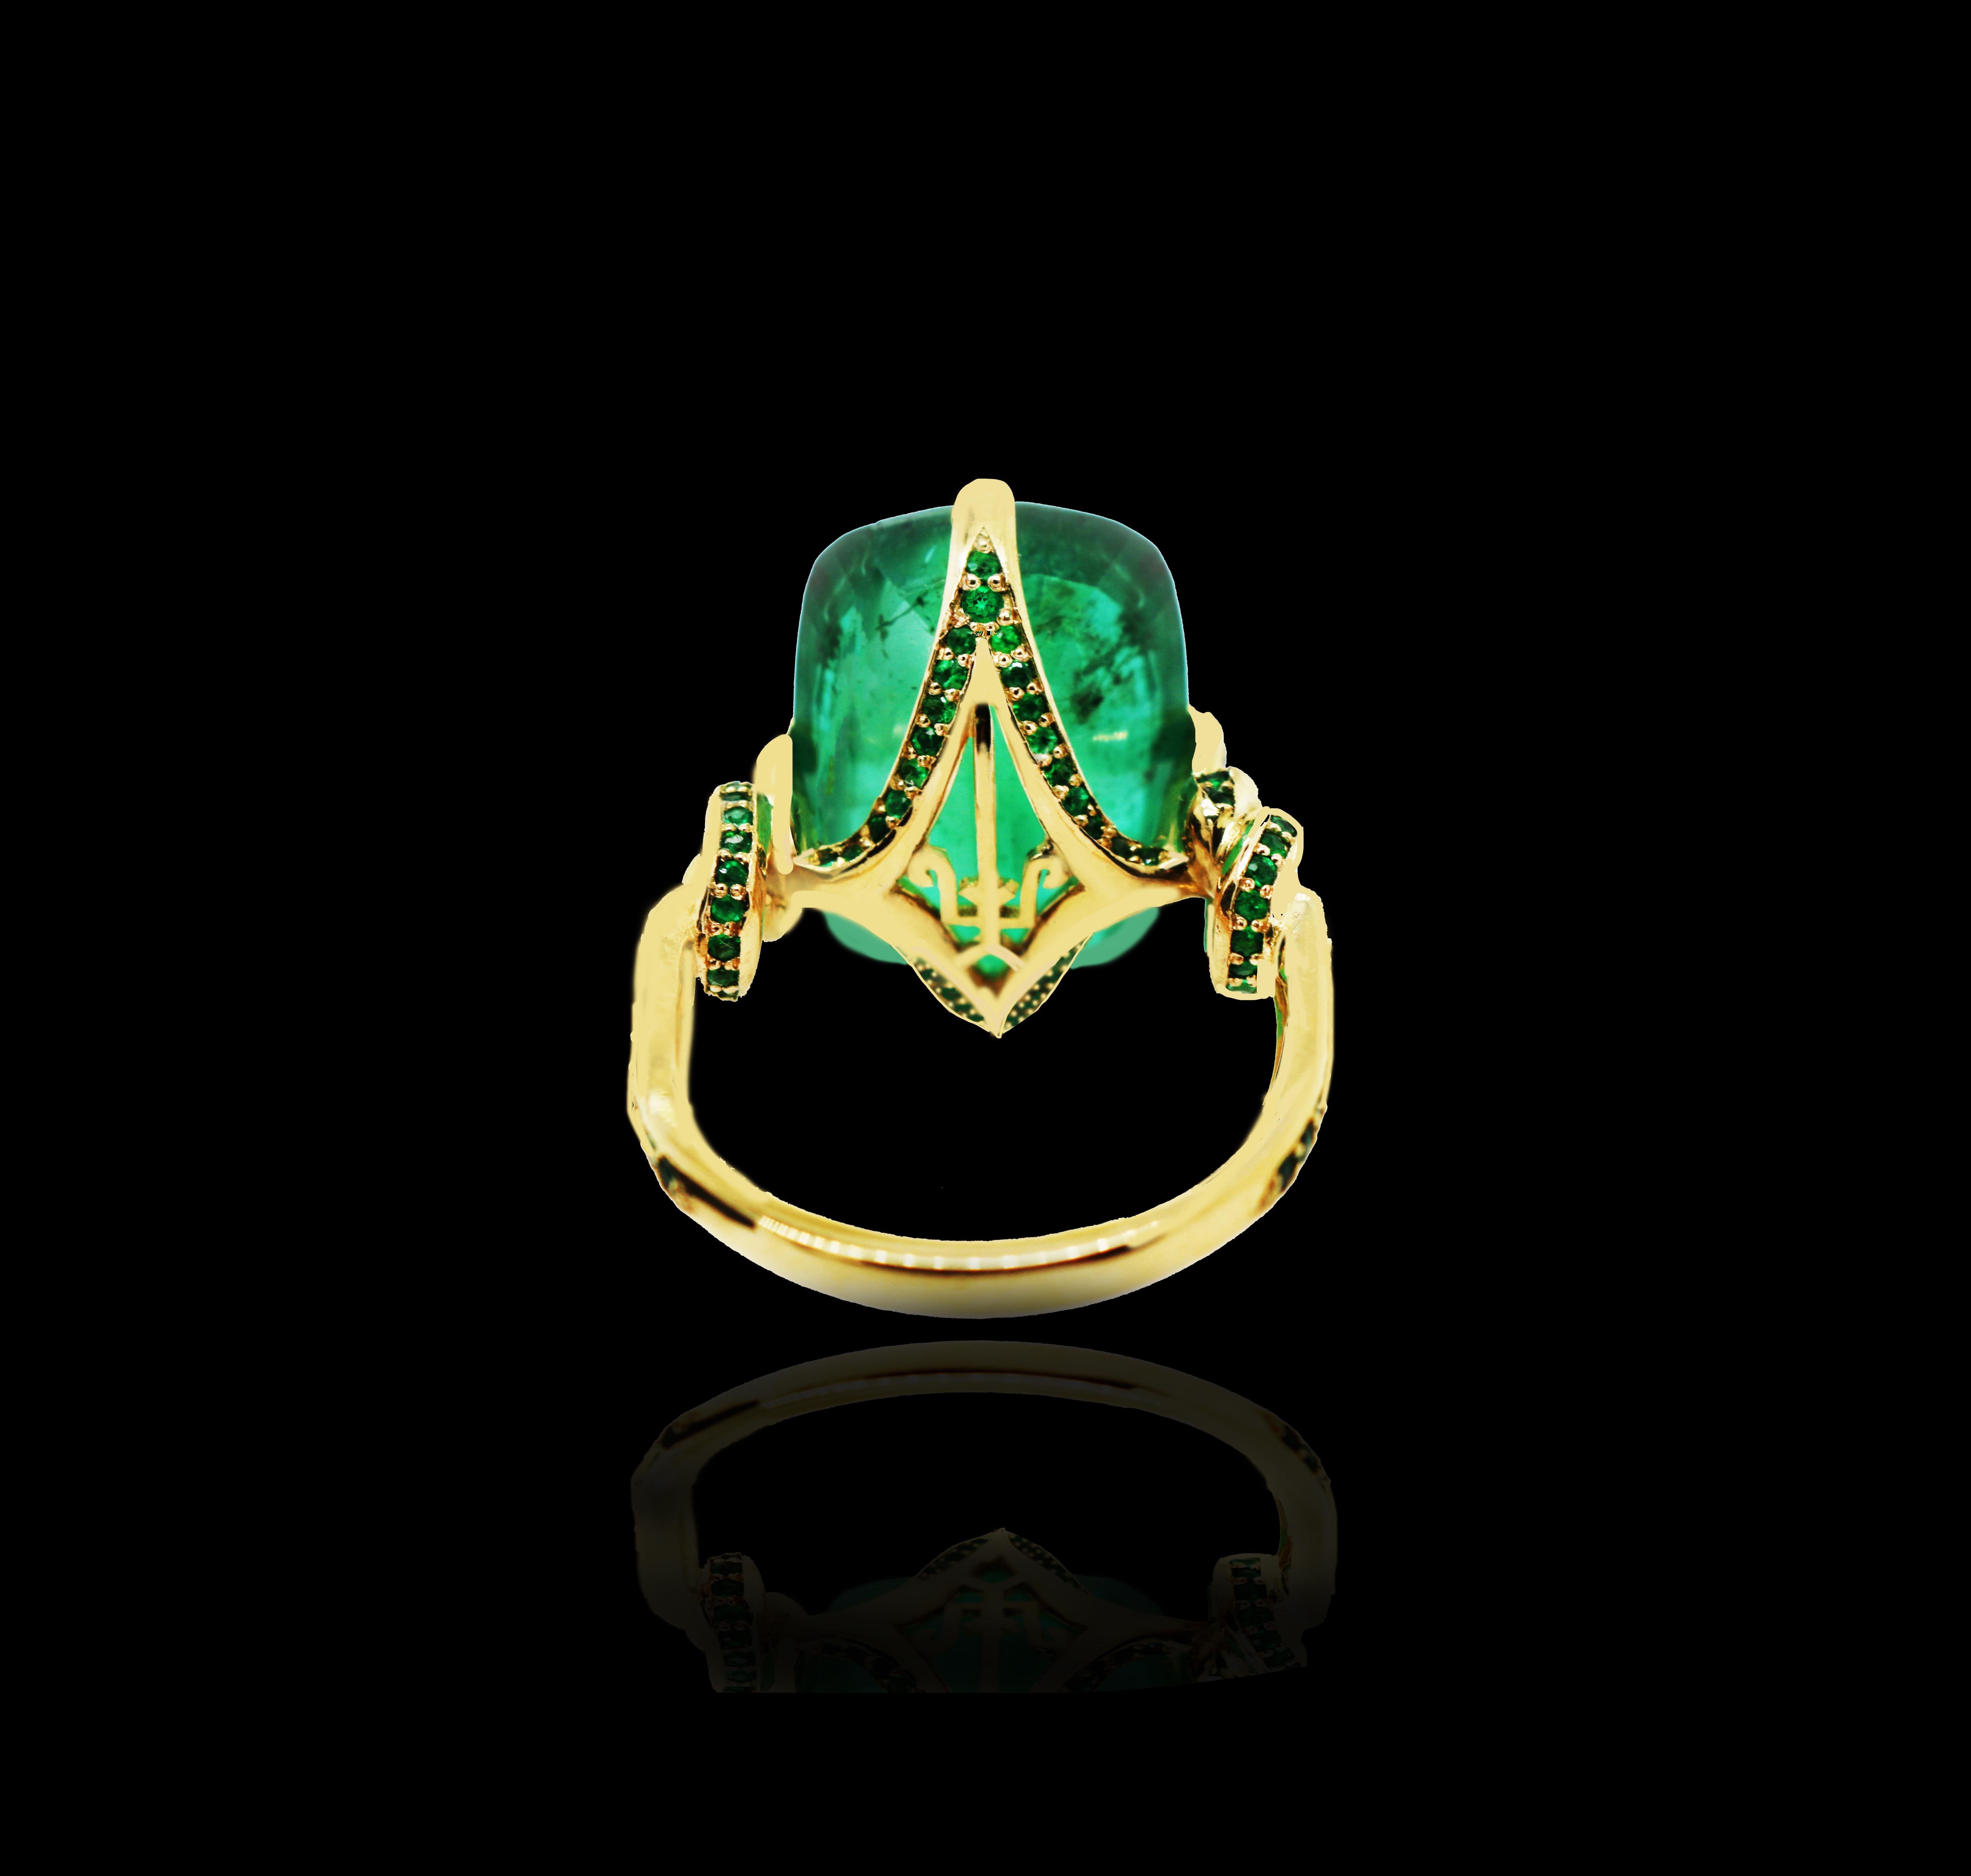 Glamourös, kühn und unverschämt verführerisch. Dieser aufsehenerregende Ring zeigt einen intensiven, natürlichen Smaragd, der zwischen scharfen, adlerähnlichen Krallen balanciert und von mächtigen, mit Smaragden besetzten Seilen umschlungen wird,